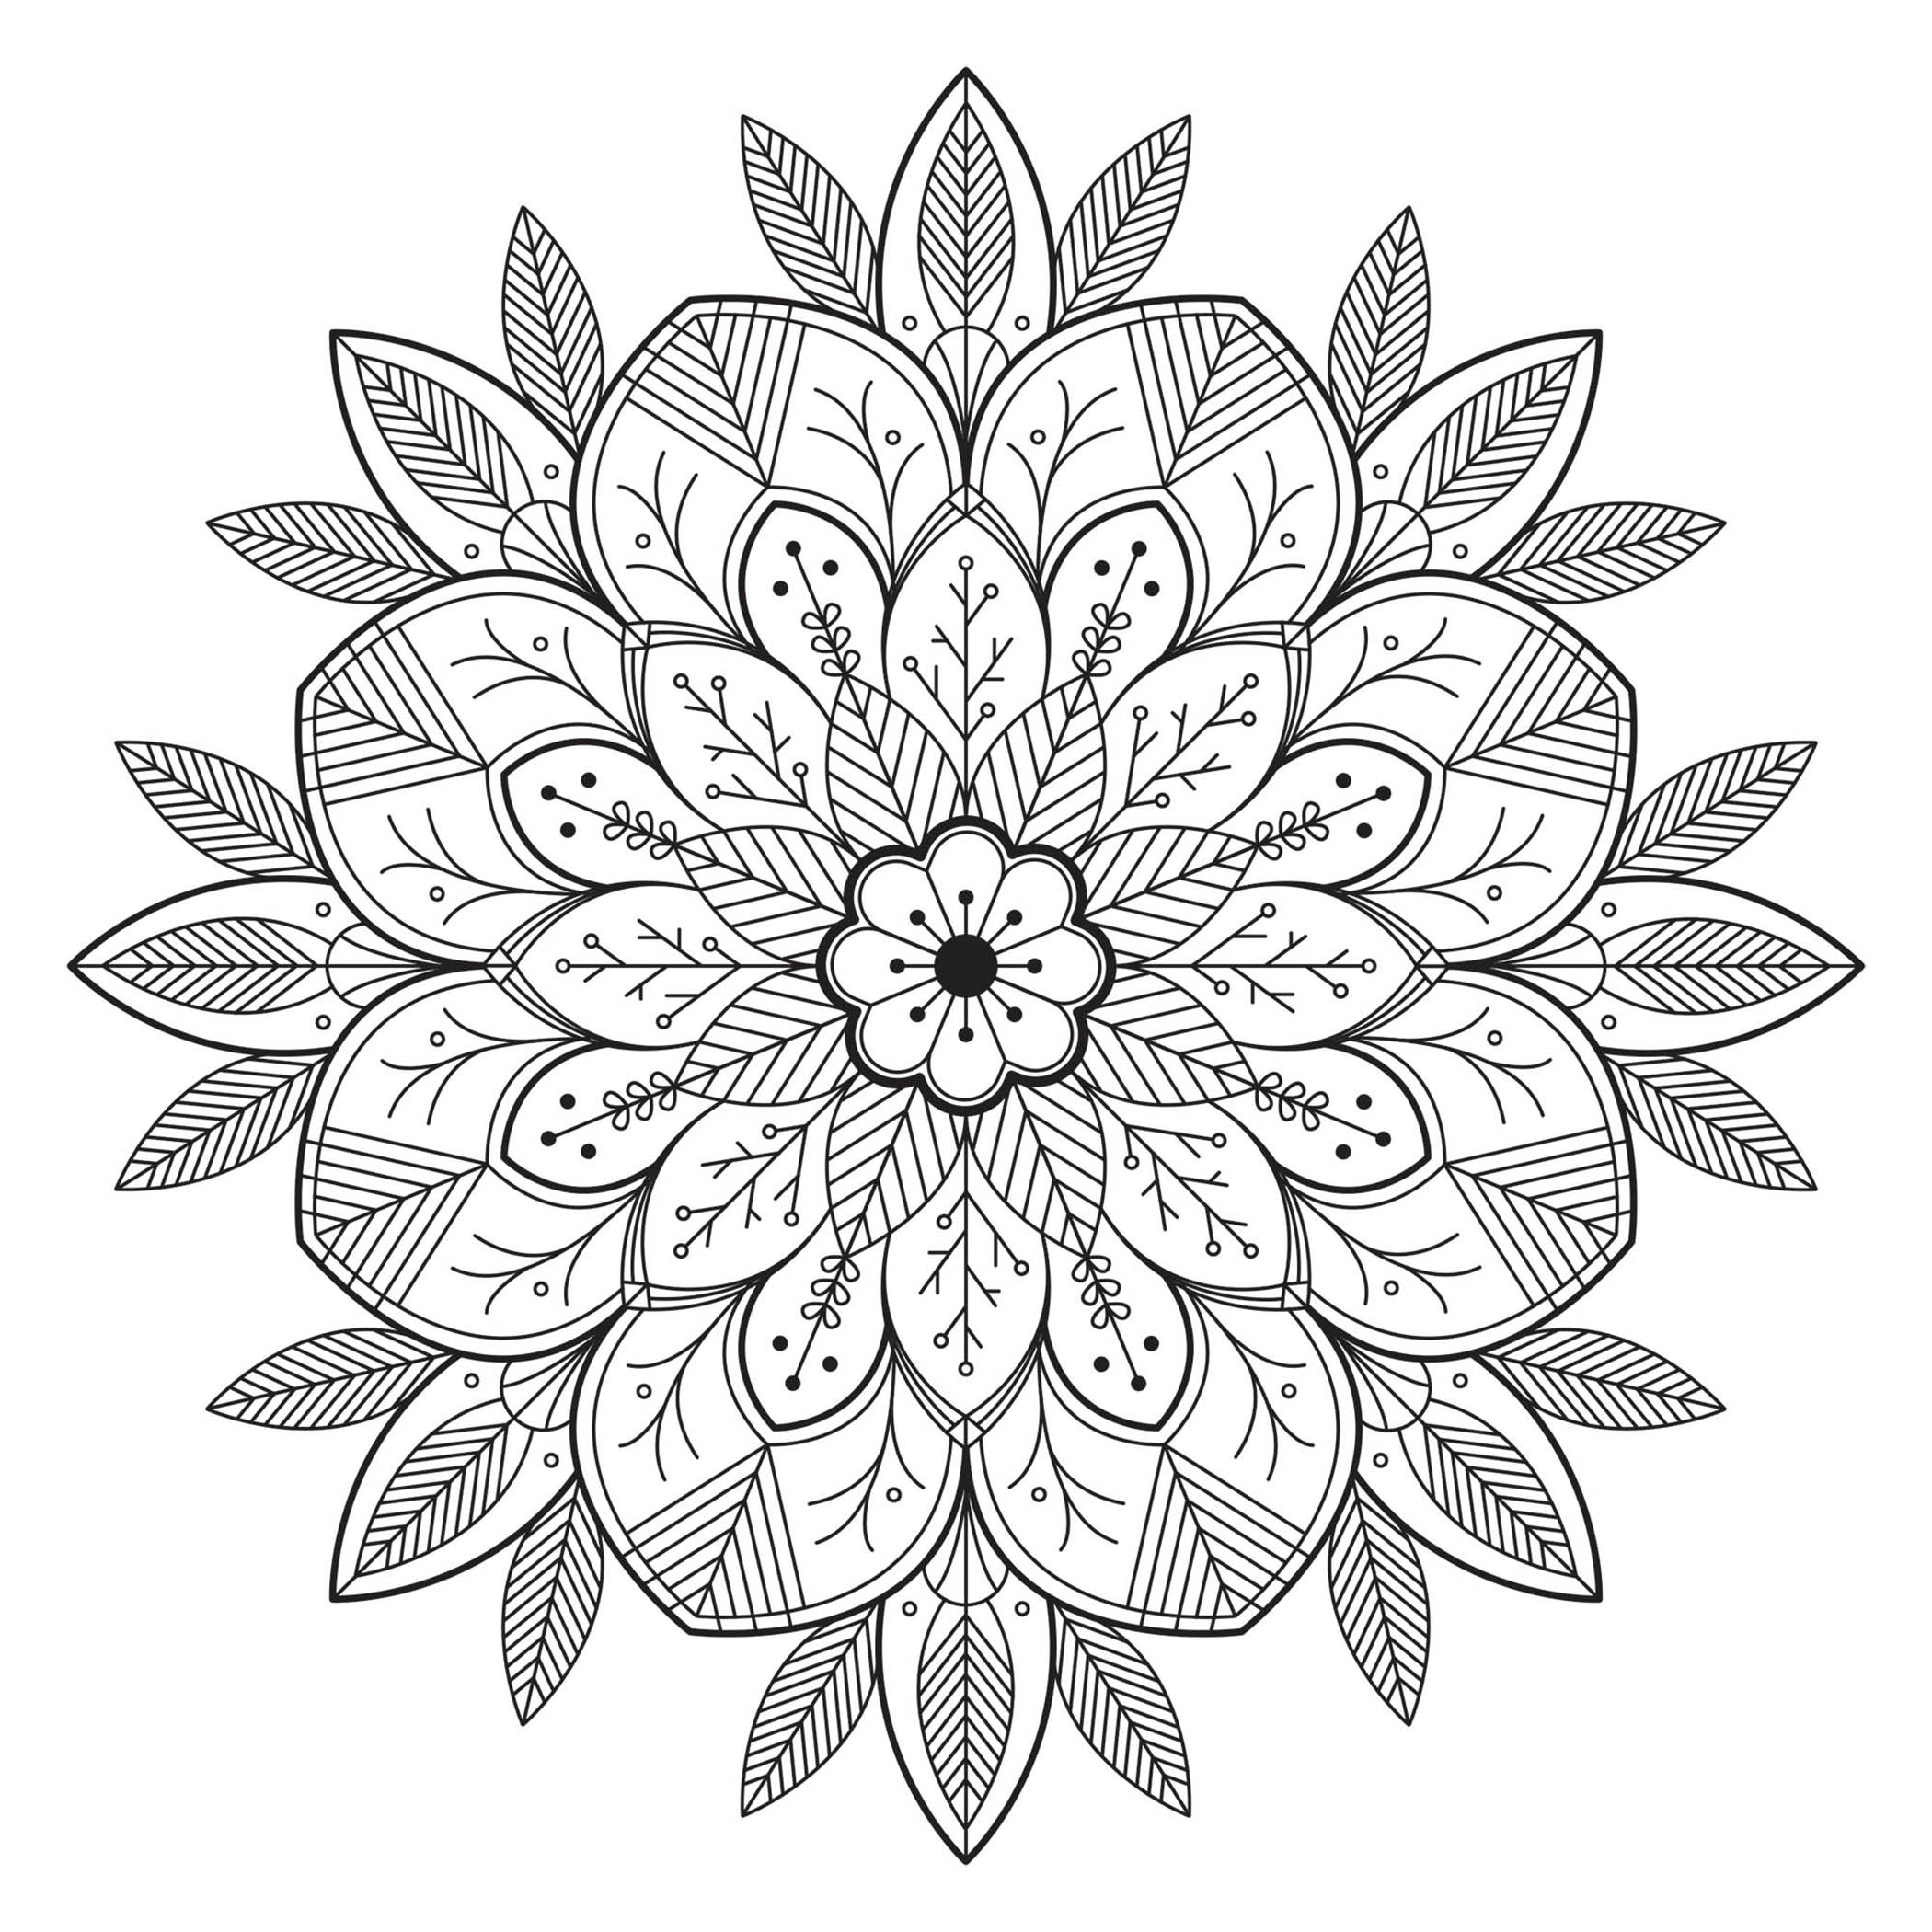 Mandala avec Feuilles et fleurs : Des détails relativement faciles à colorier, pour un coloriage de Mandala très original et de grande qualité.